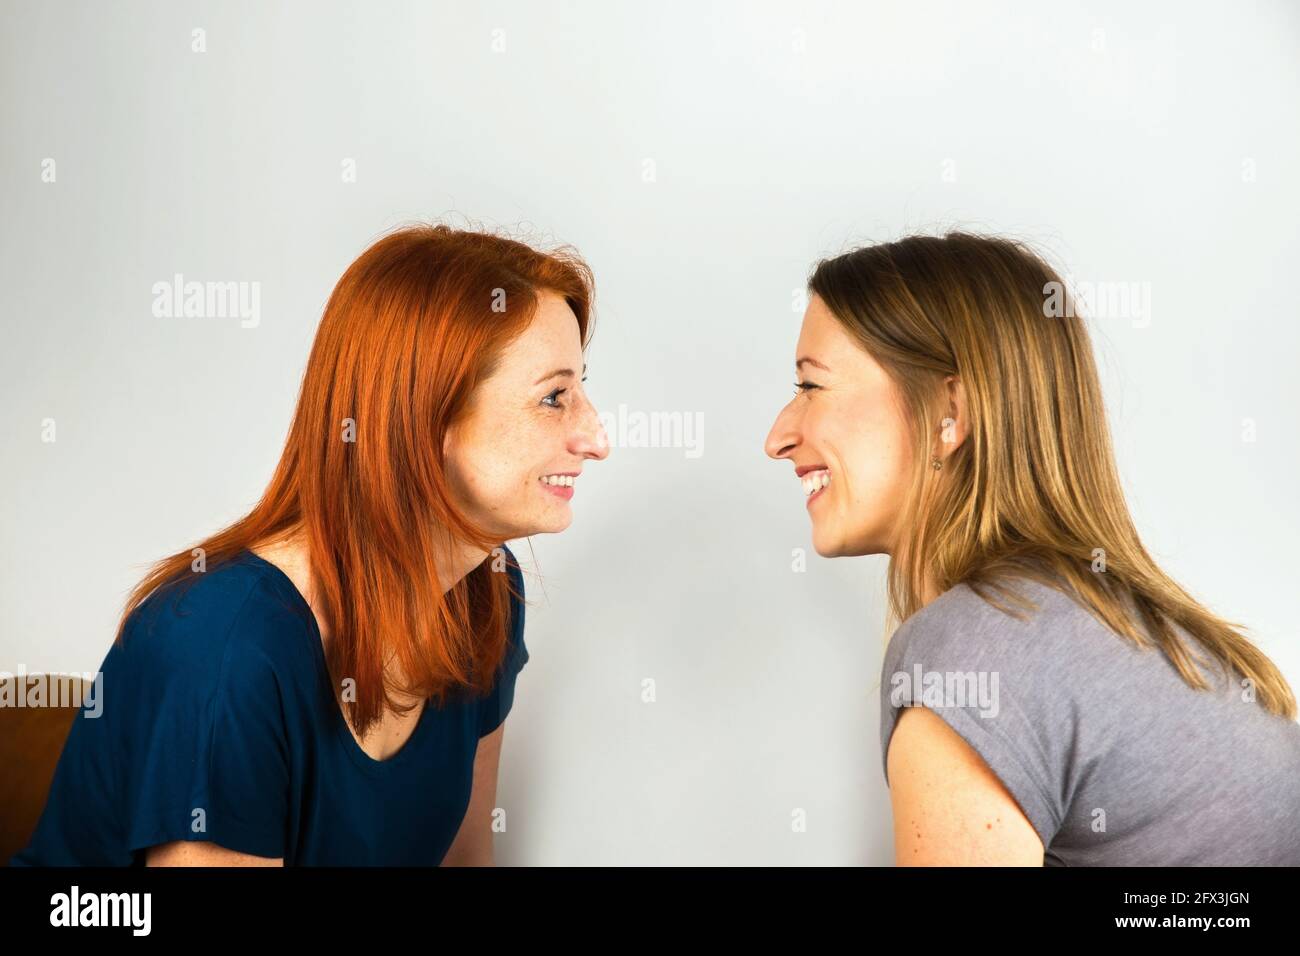 Zwei attraktive junge Frauen lachen sich gegenseitig aus. Sie sitzen einander gegenüber und haben Spaß. Auf grauem Hintergrund. Stockfoto